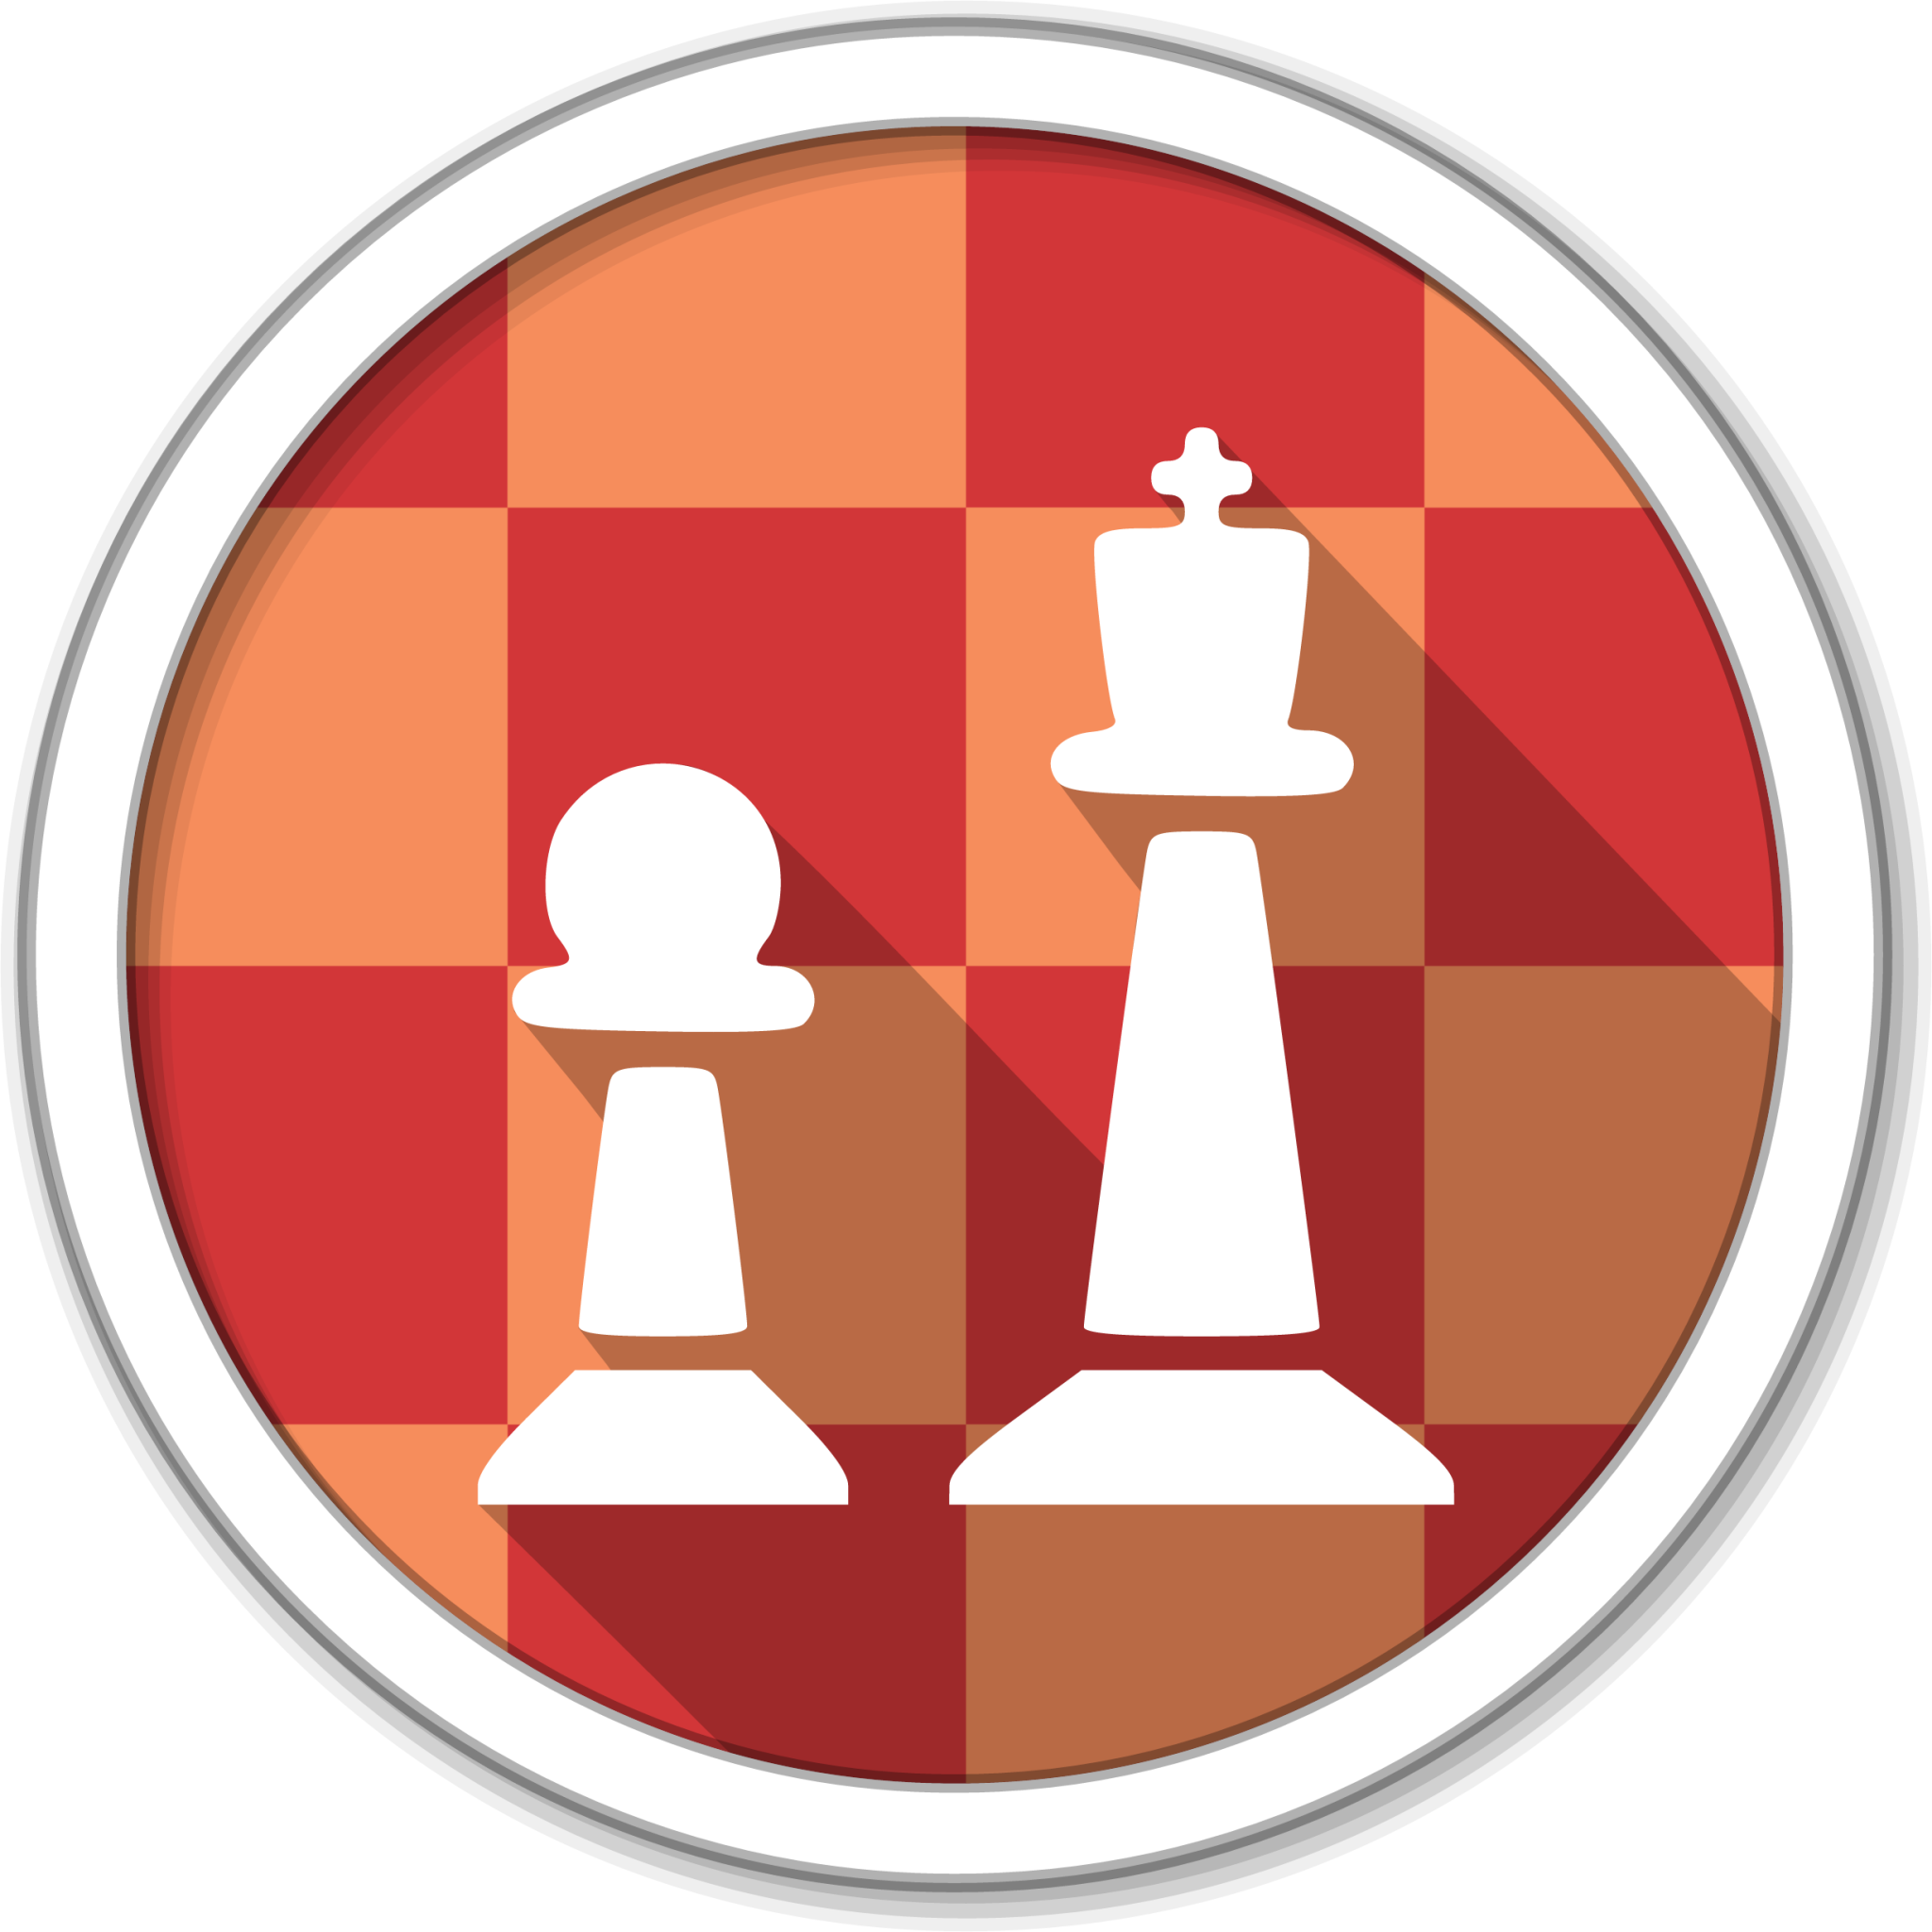 Página 2  Fotos Chess Icons, 26.000+ fotos de arquivo grátis de alta  qualidade